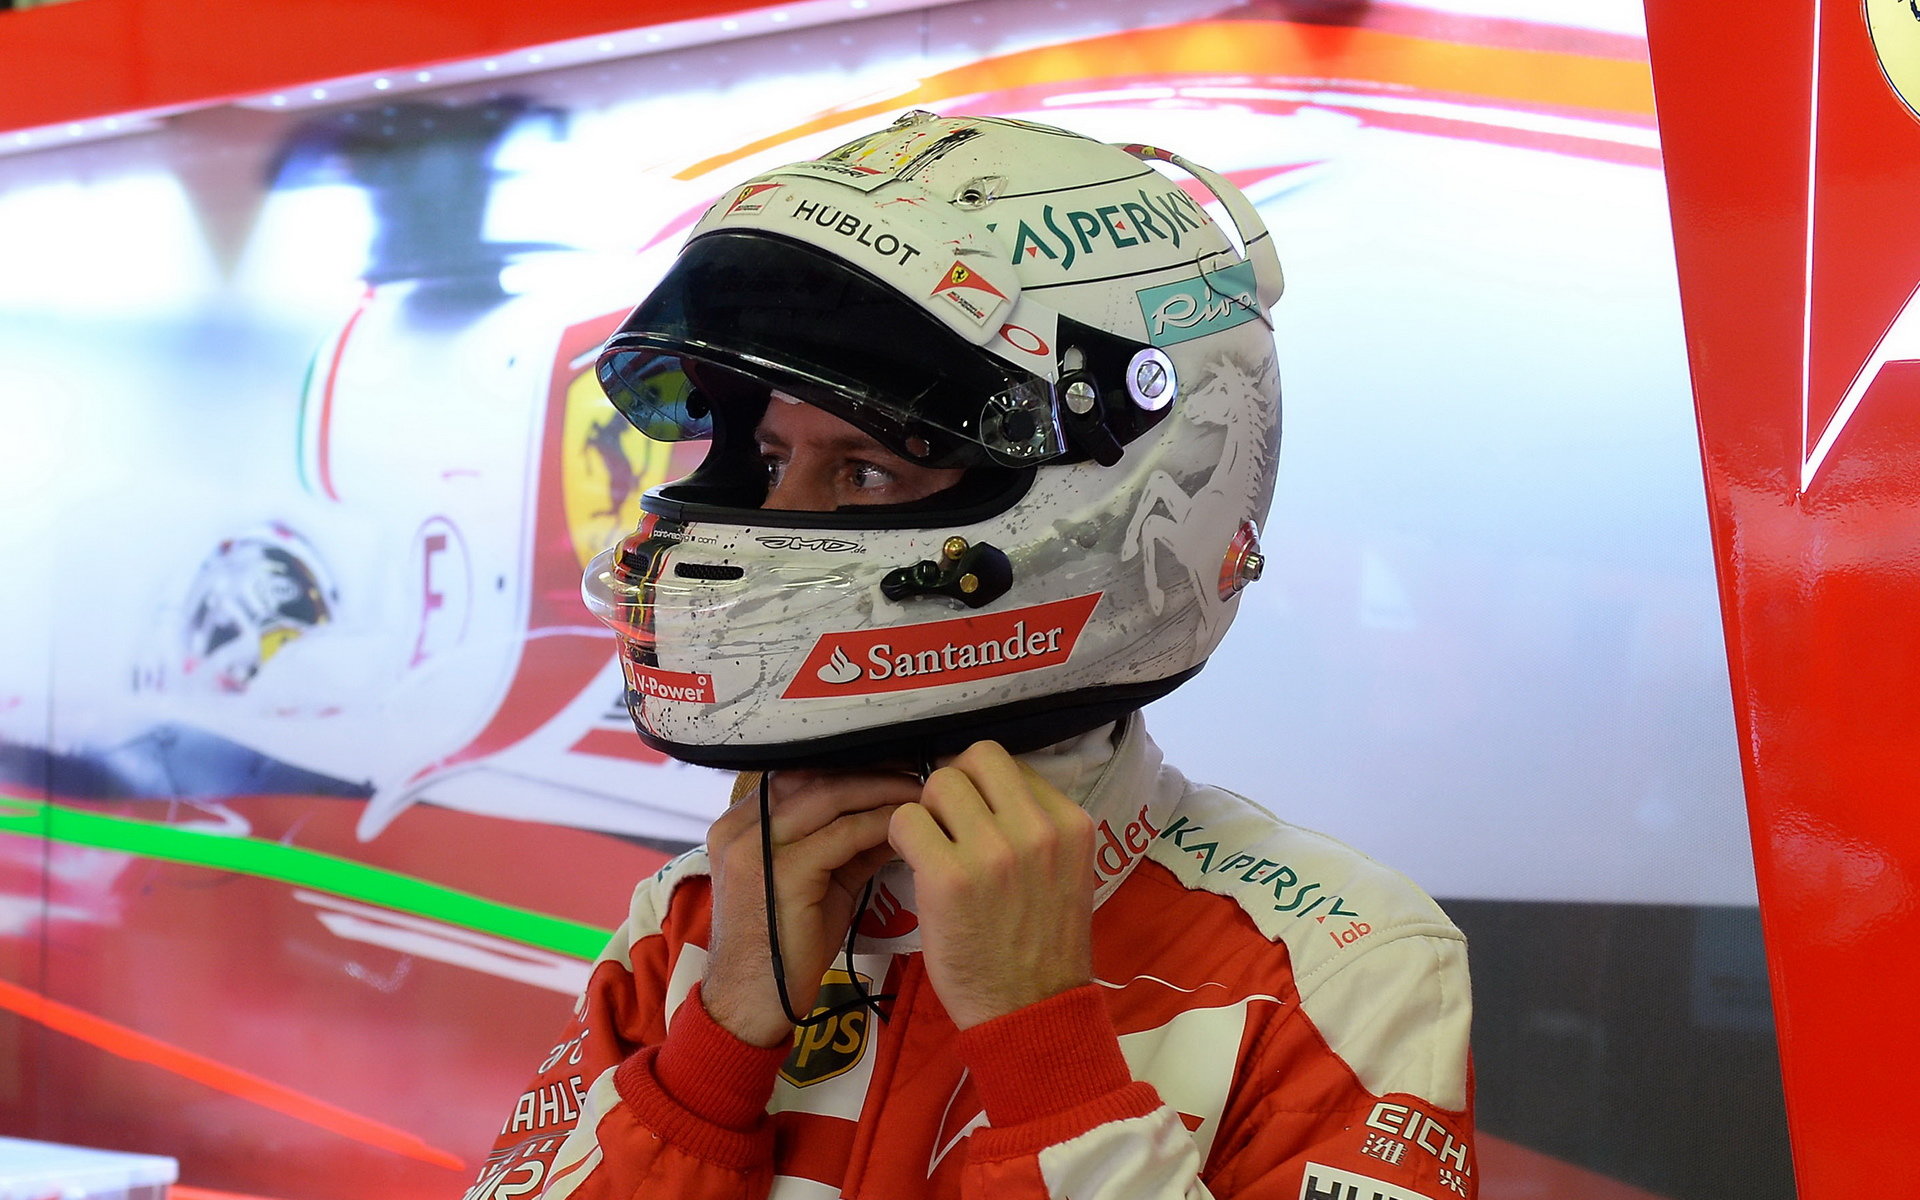 Sebastian Vettel kritizuje sám sebe, nedokázal předjet soupeře ve fázi, kdy to bylo nutné